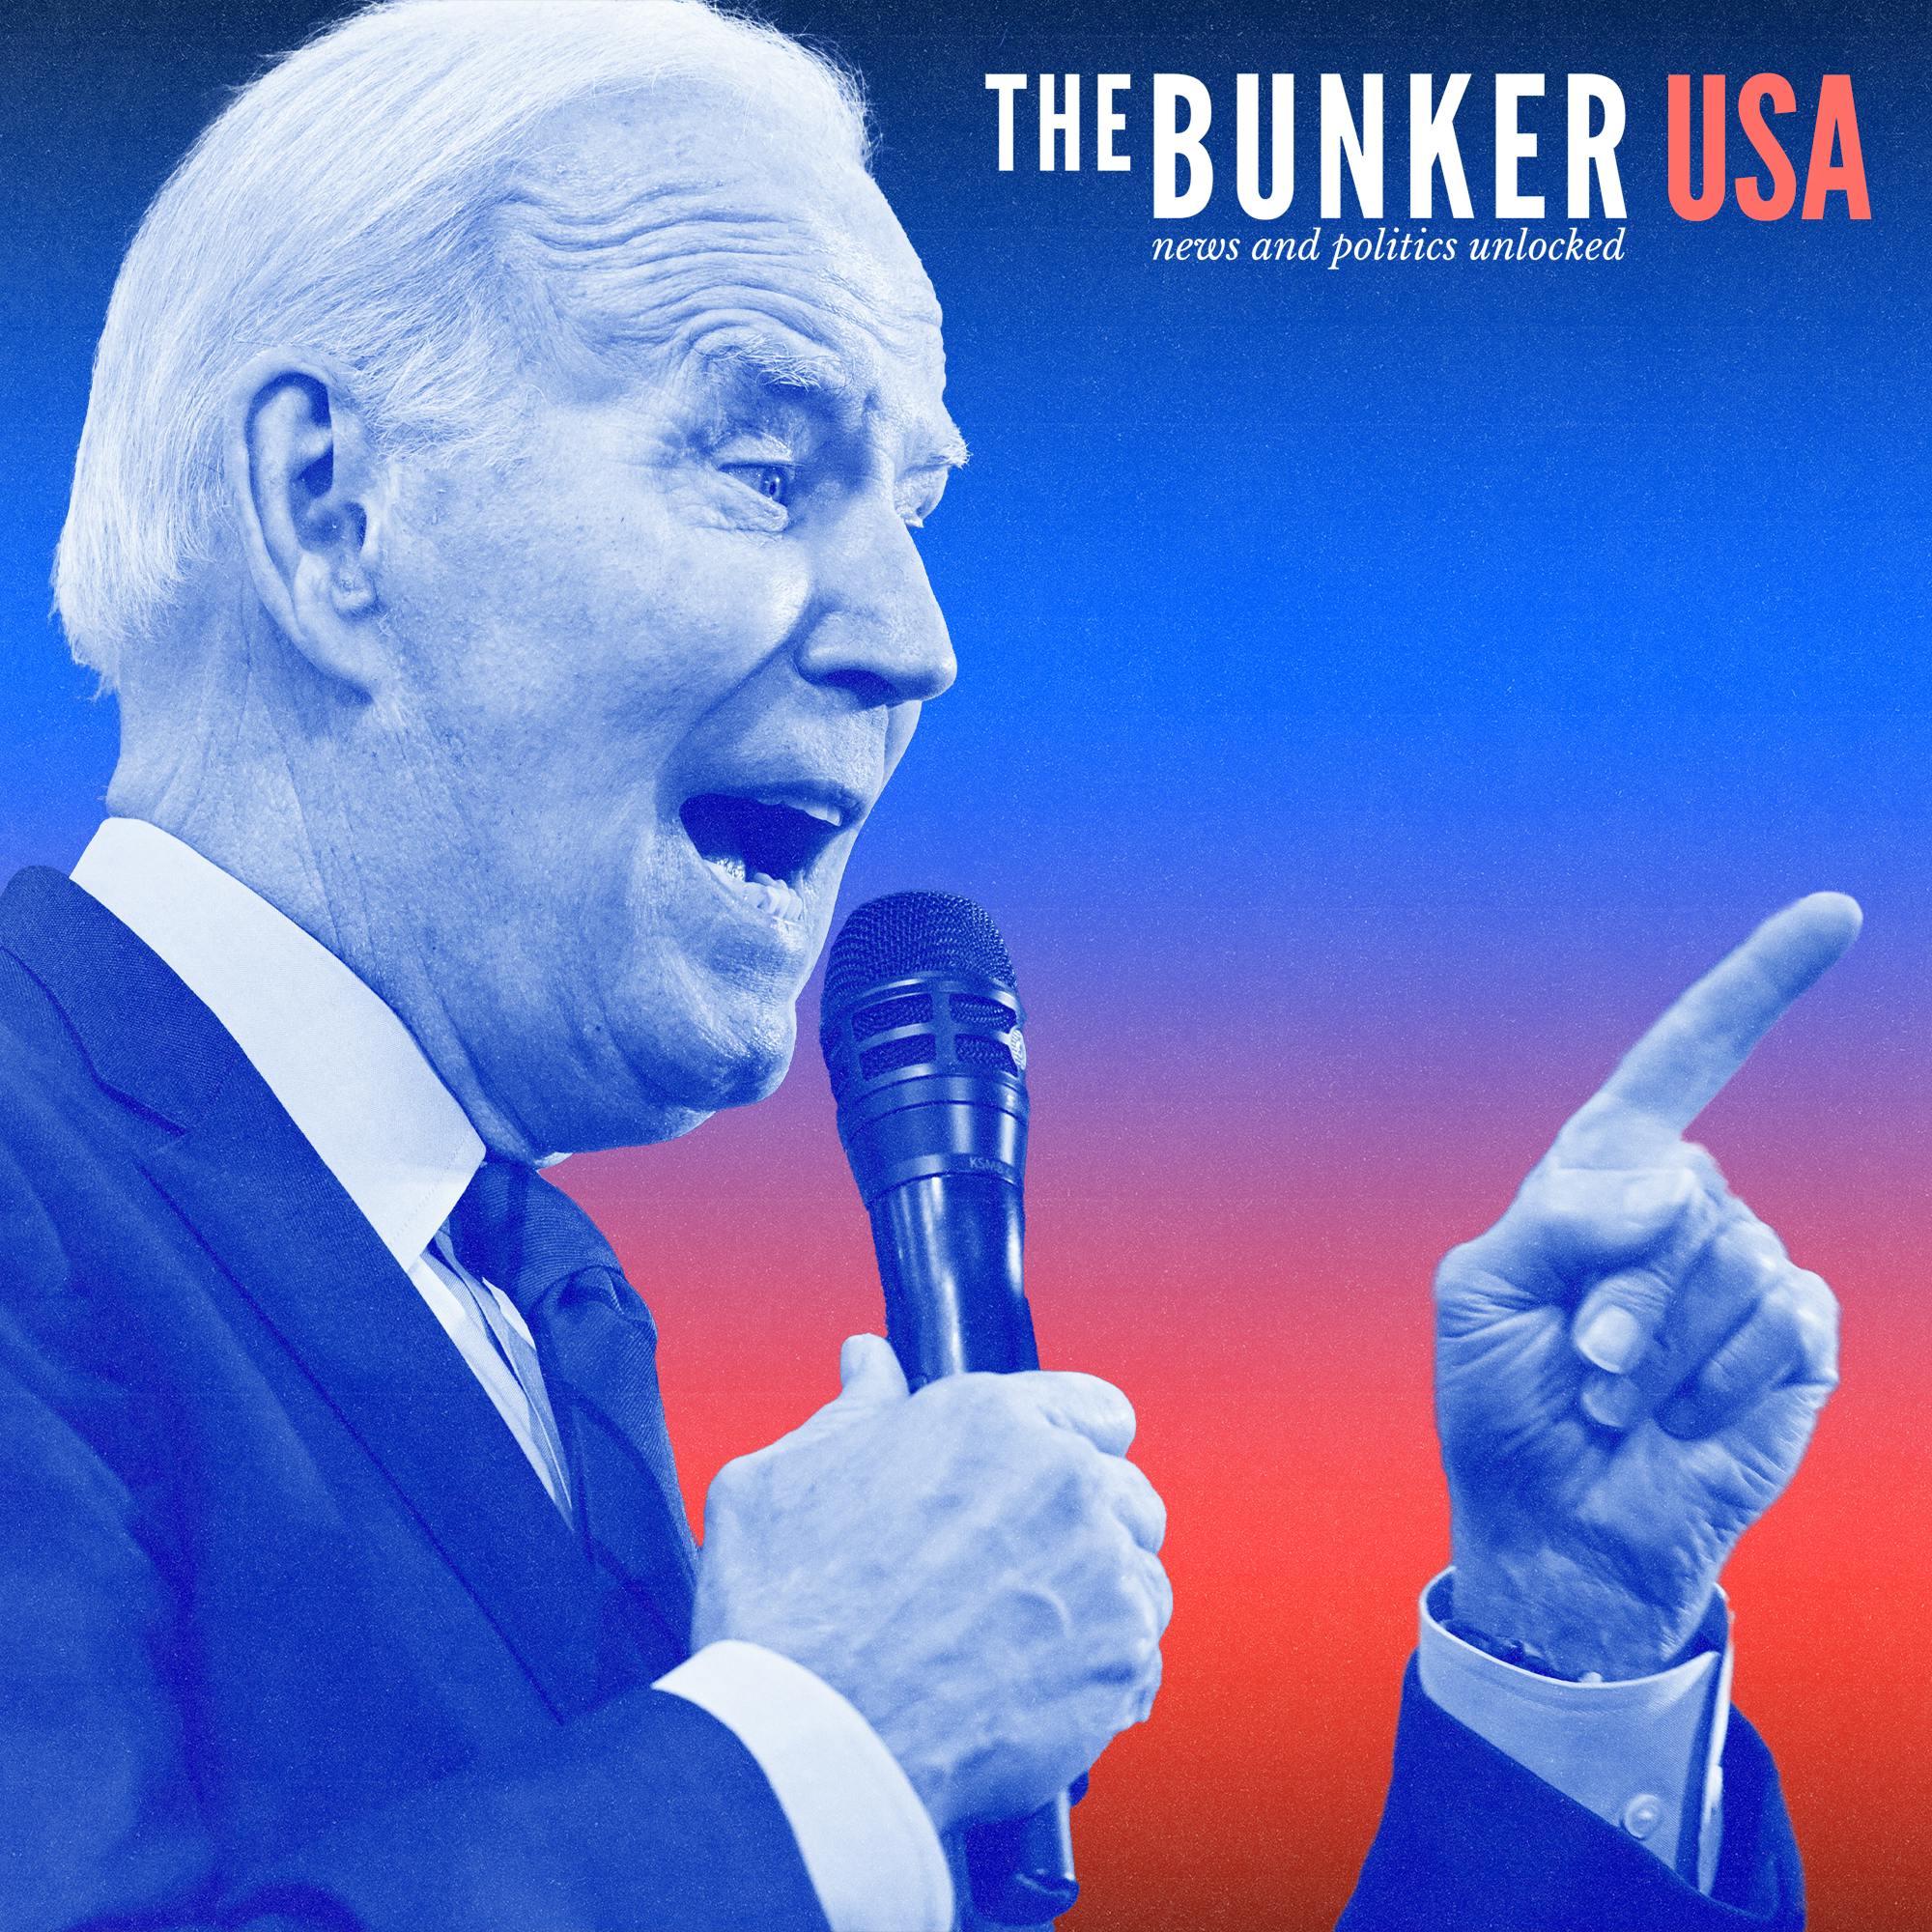 Bunker USA: Joe Biden wants to ‘finish the job’. Can he?